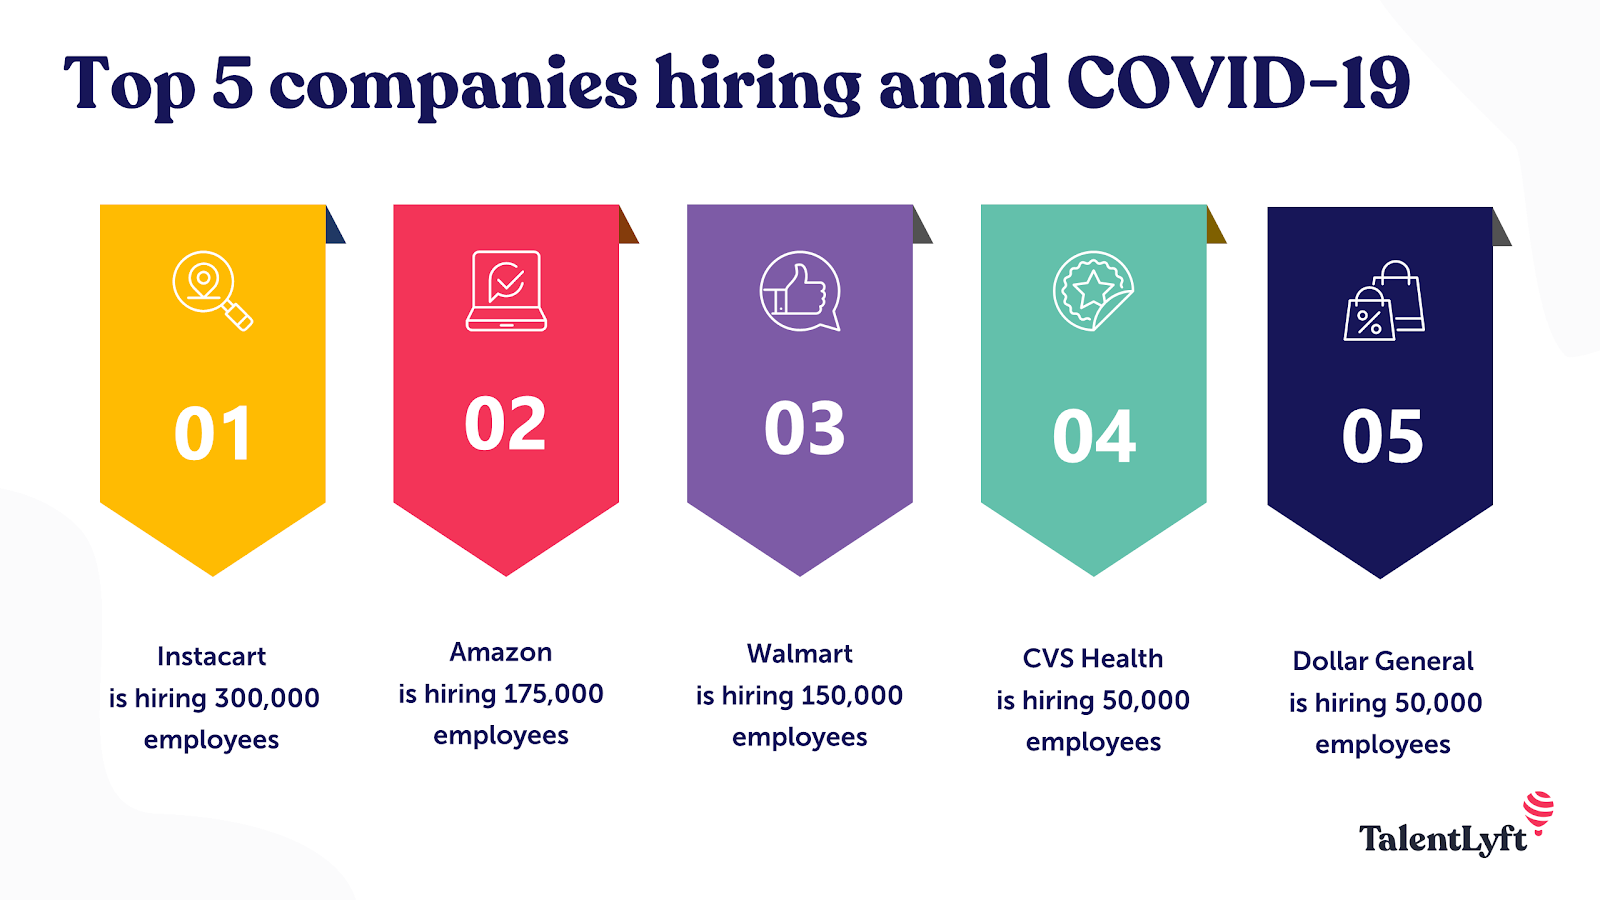 Companies hiring amidst COVID-19